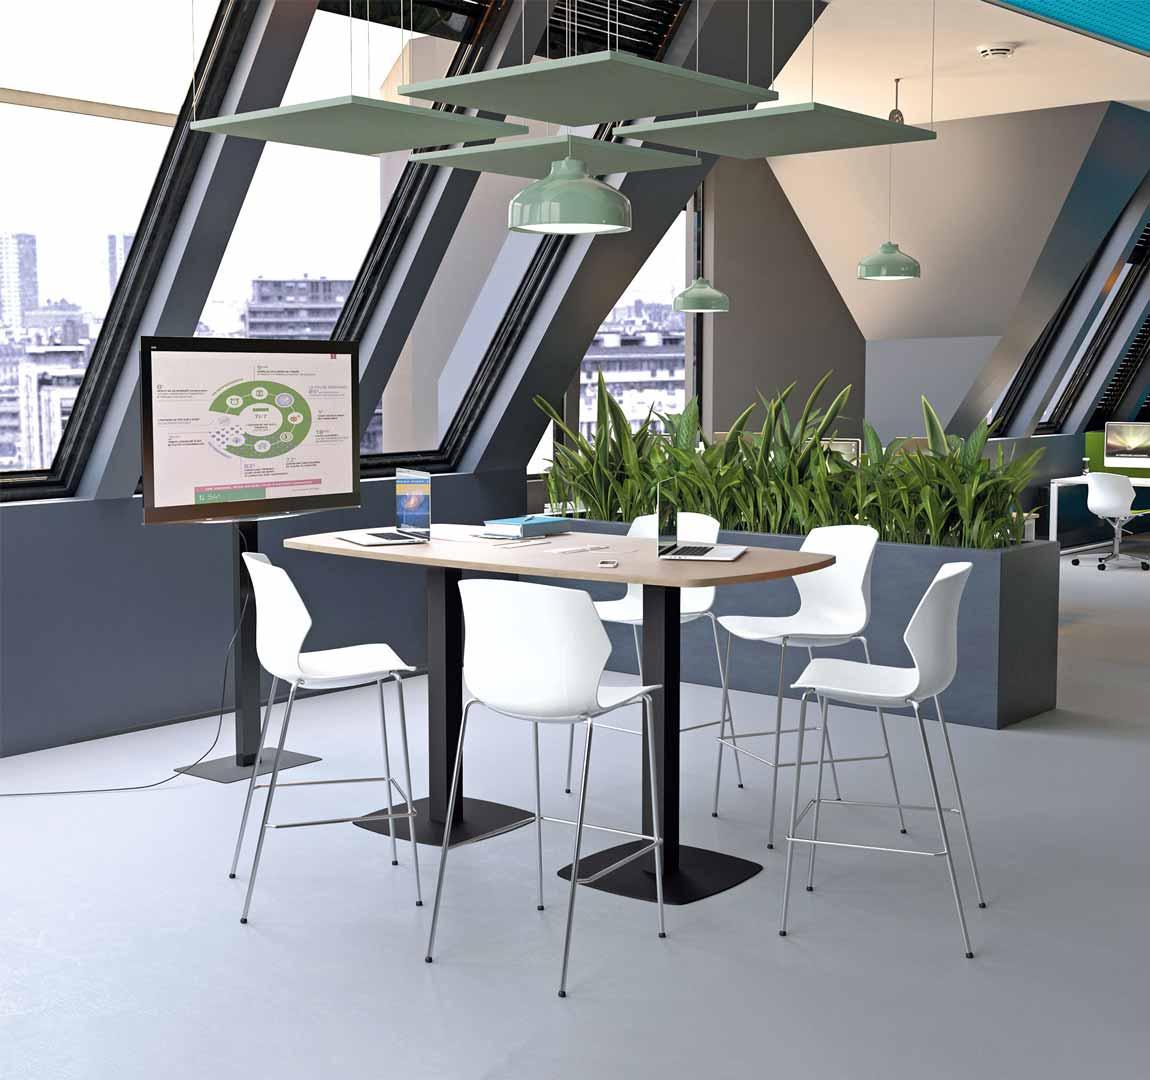 Table de réunion avec connectique pour espaces de travail ouverts, flex office - WORKING_0